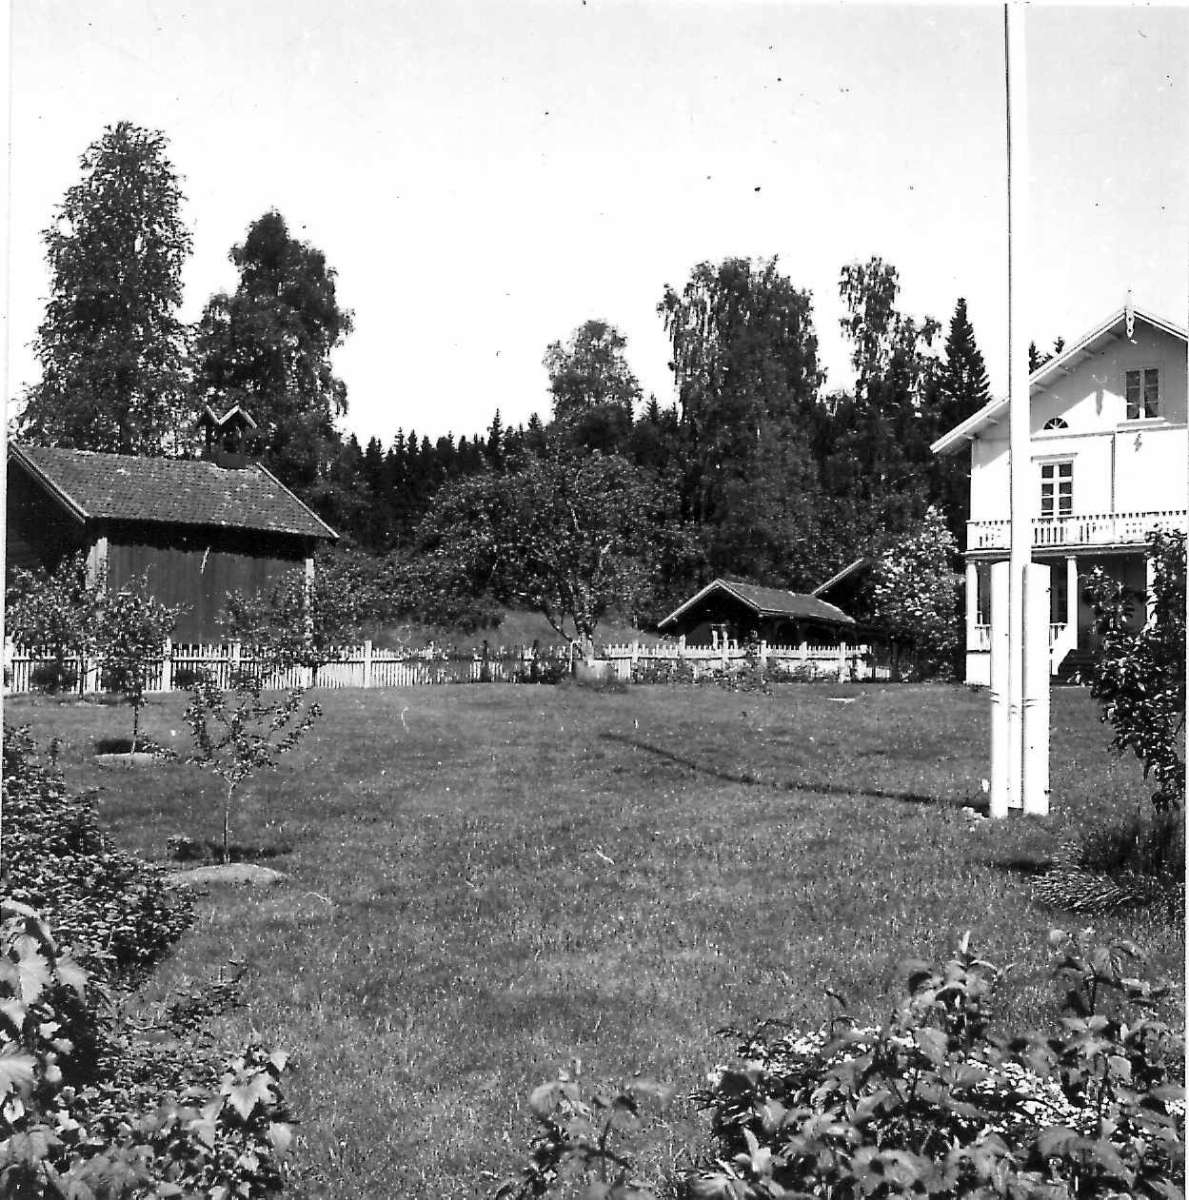 Viken, Hurdal, Akershus 1954. Fra hagen med hovedhuset, uthus og flaggstang. Storgårdsundersøkelser ved dr. Engelstad i 1954.
